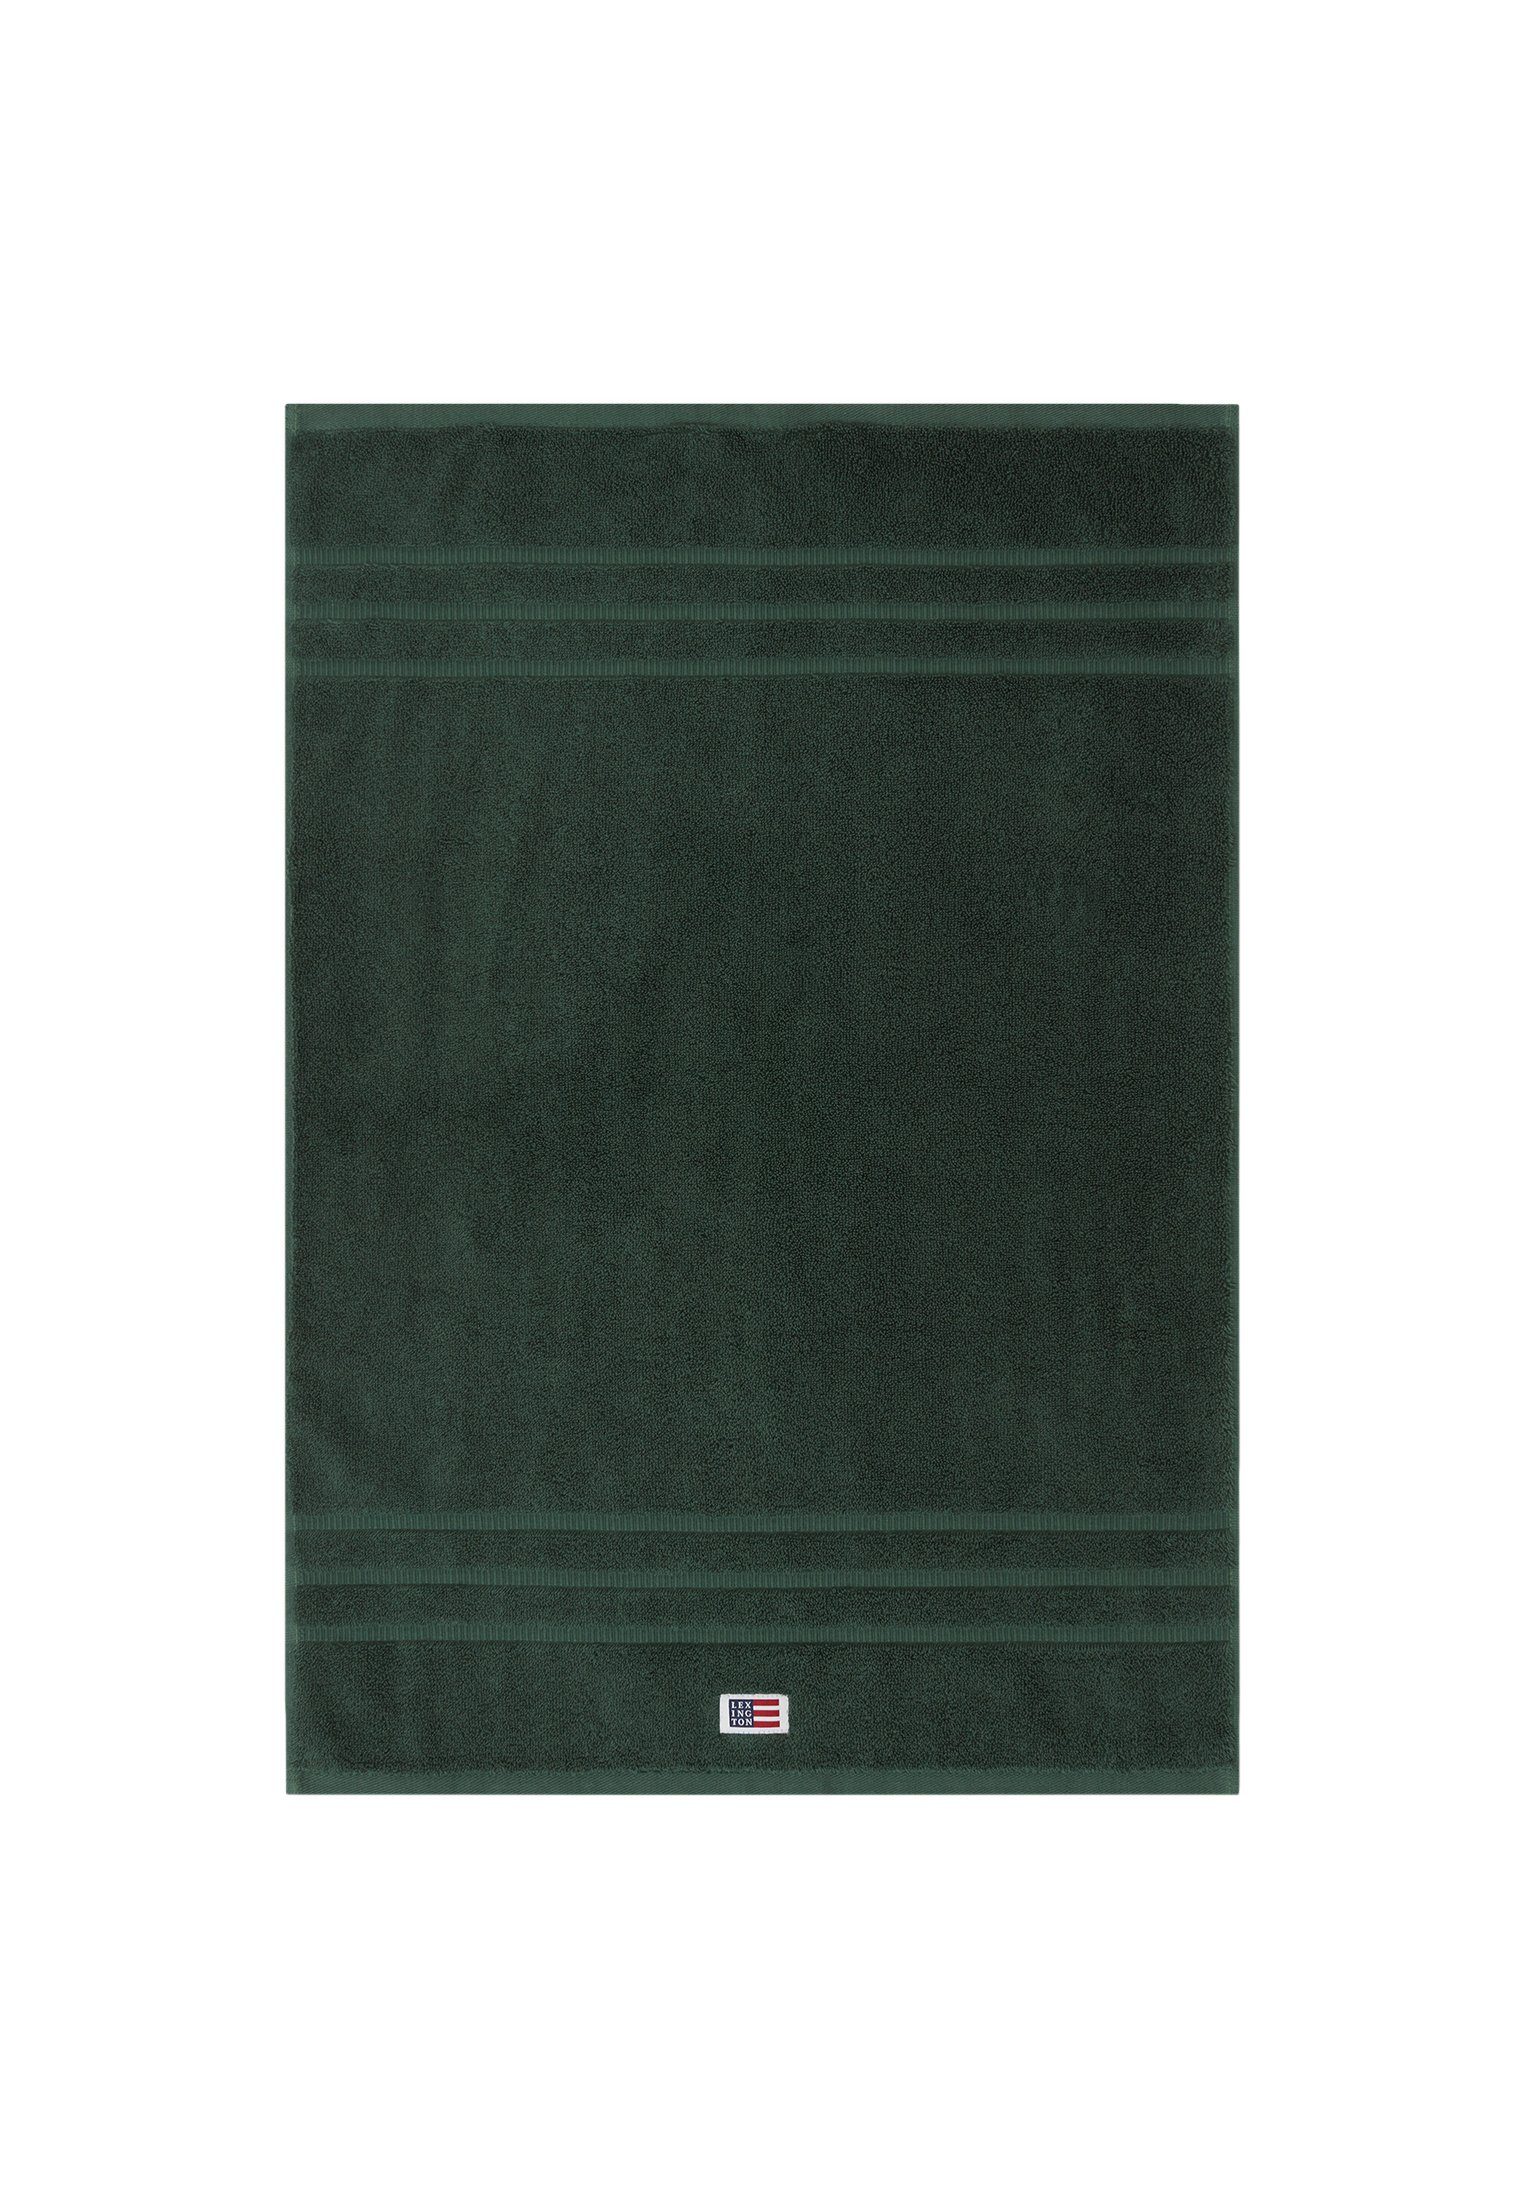 Original Handtuch Lexington juniper Towel green